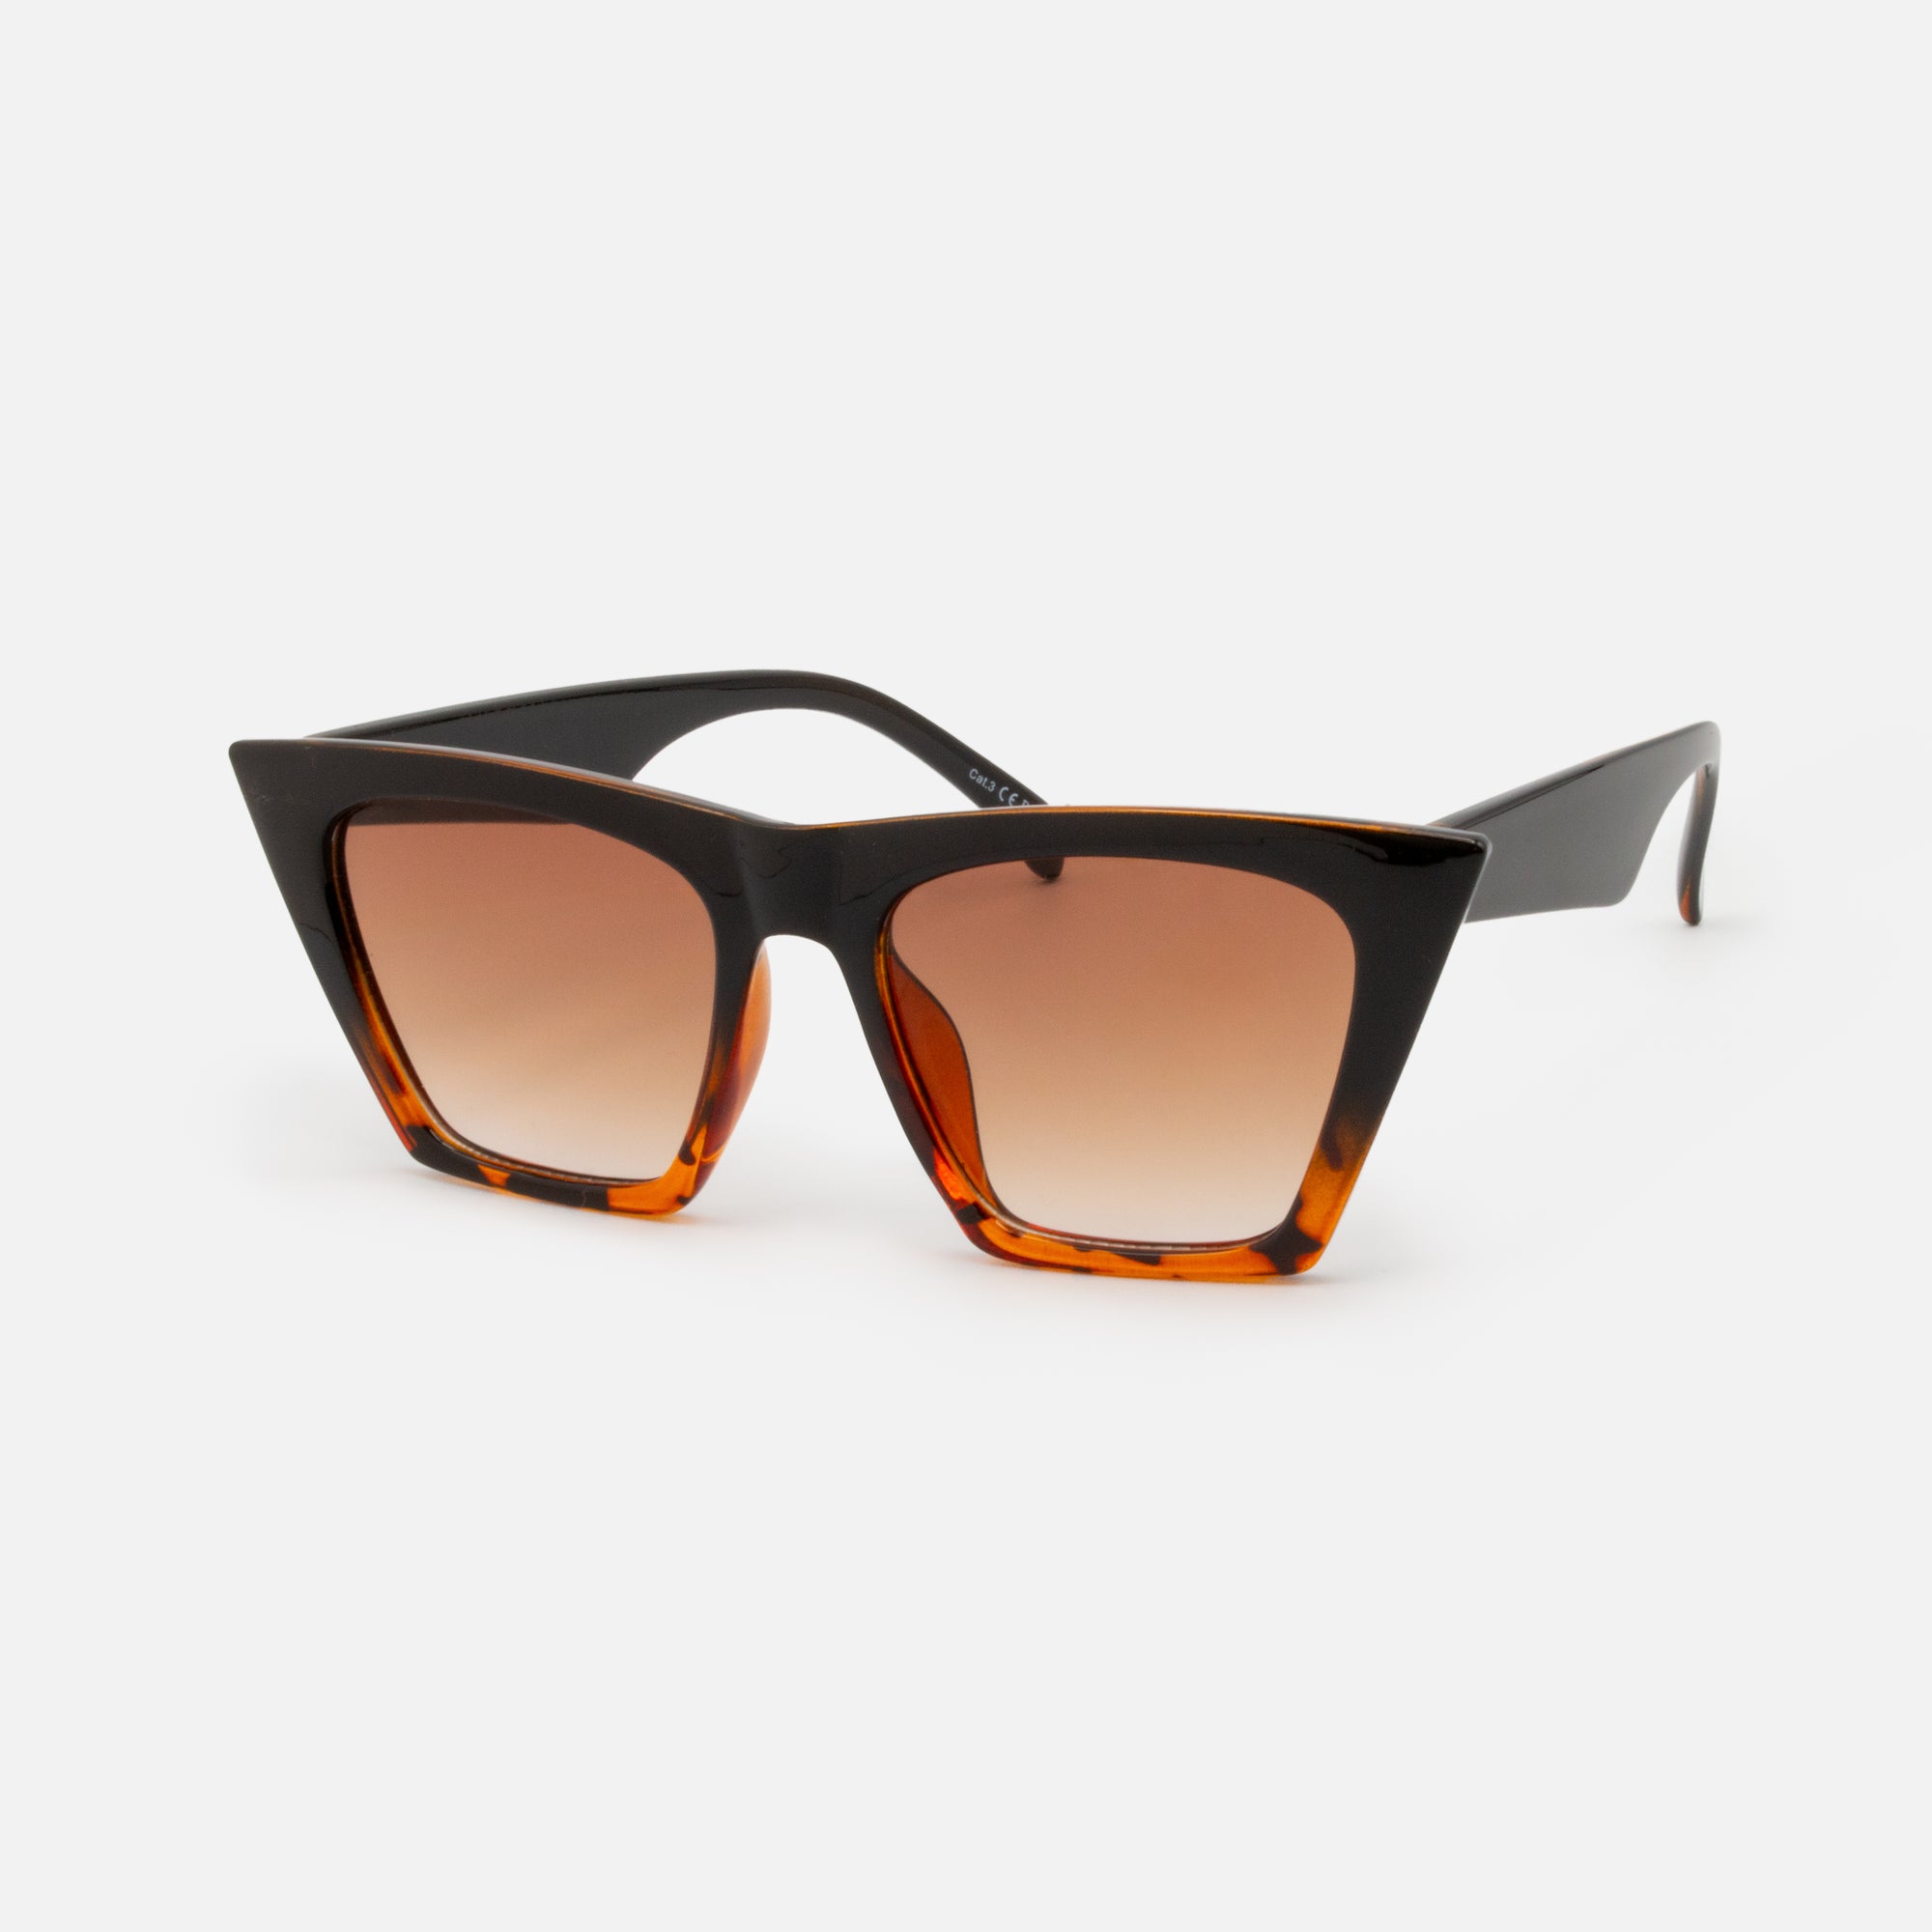 Black and tortoise gradient angular cat-eye sunglasses